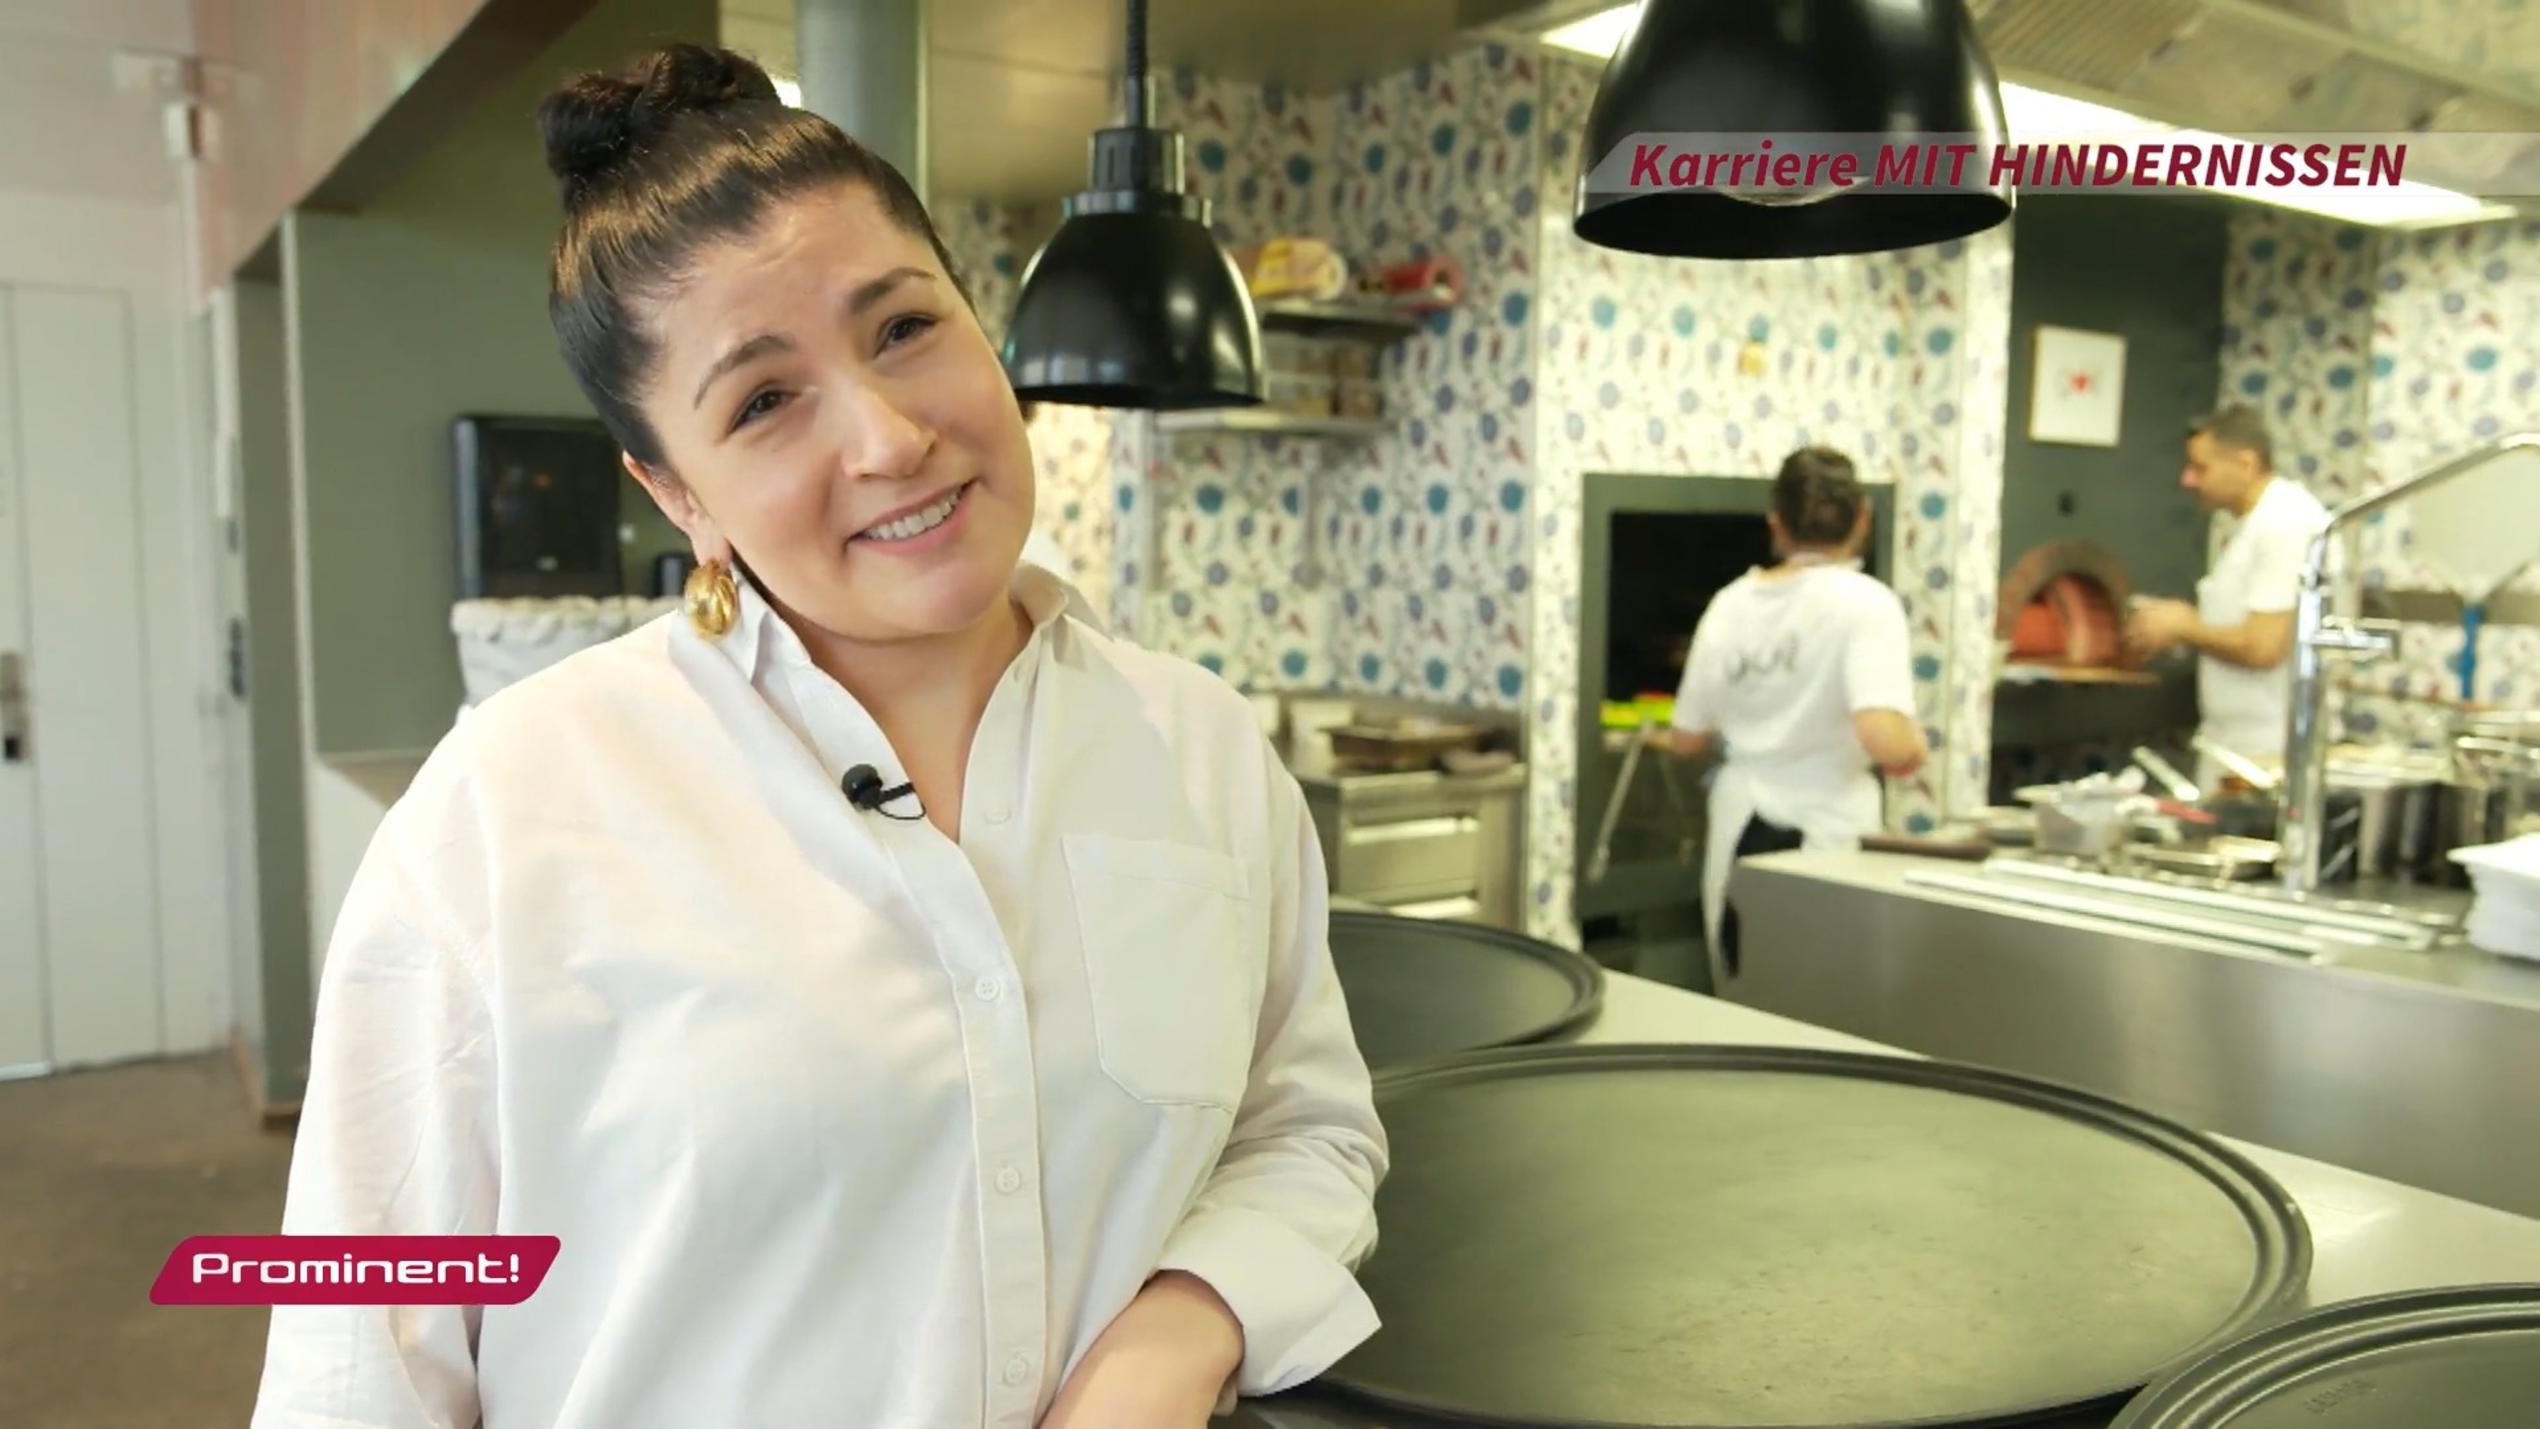 Elif Oskan: Küchen-Karriere mit Hindernissen